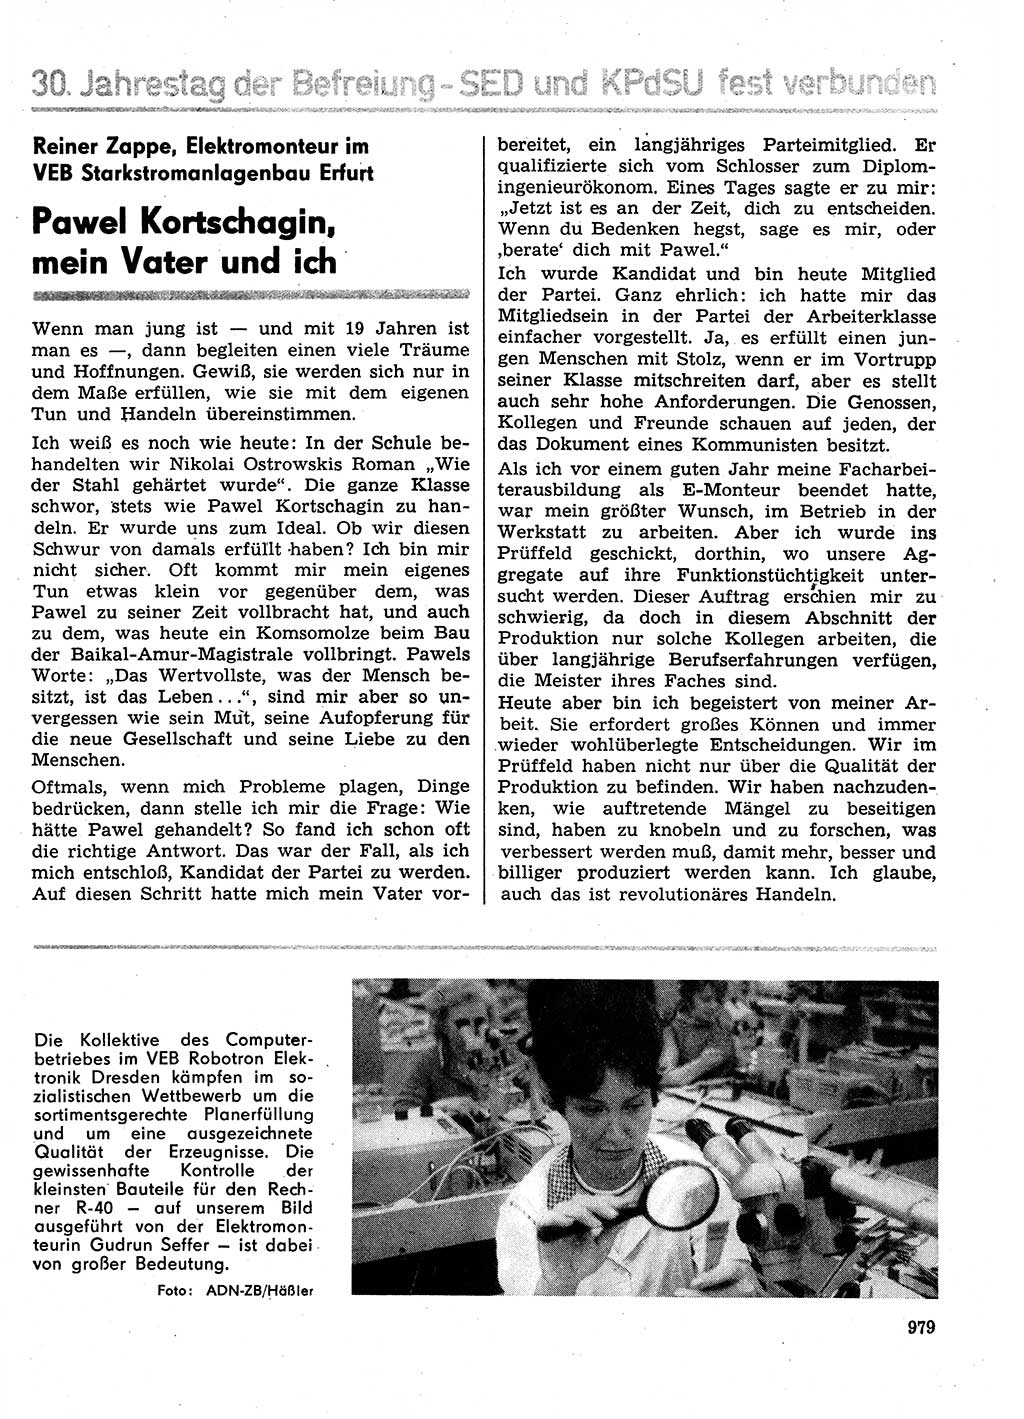 Neuer Weg (NW), Organ des Zentralkomitees (ZK) der SED (Sozialistische Einheitspartei Deutschlands) für Fragen des Parteilebens, 29. Jahrgang [Deutsche Demokratische Republik (DDR)] 1974, Seite 979 (NW ZK SED DDR 1974, S. 979)